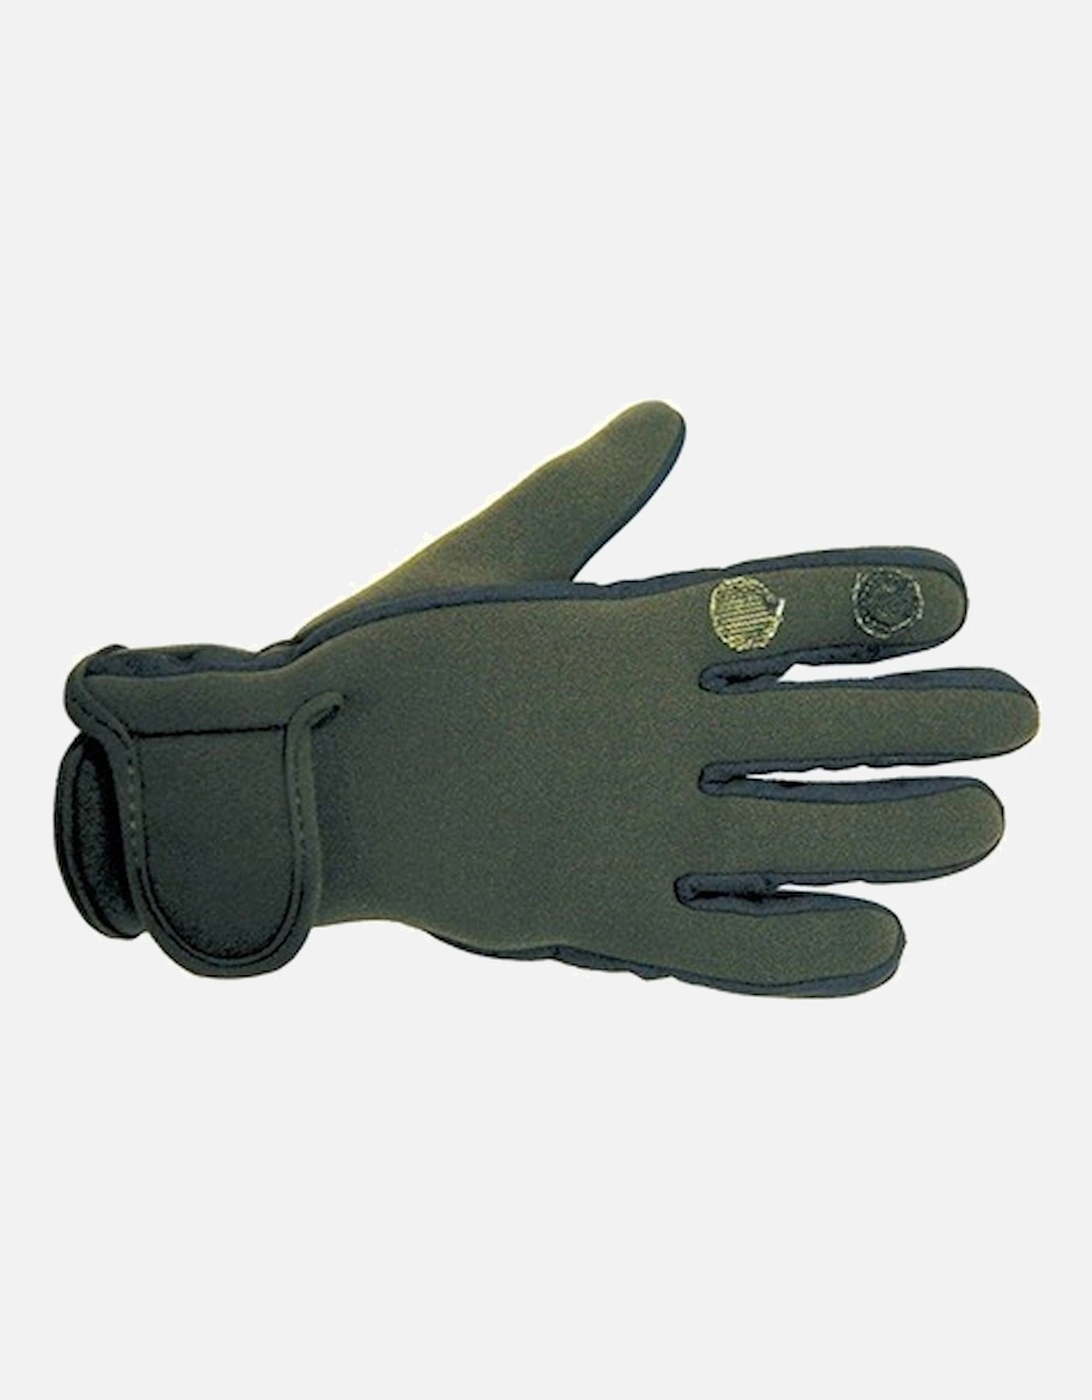 Neoprene Hunting Gloves Khaki, 2 of 1